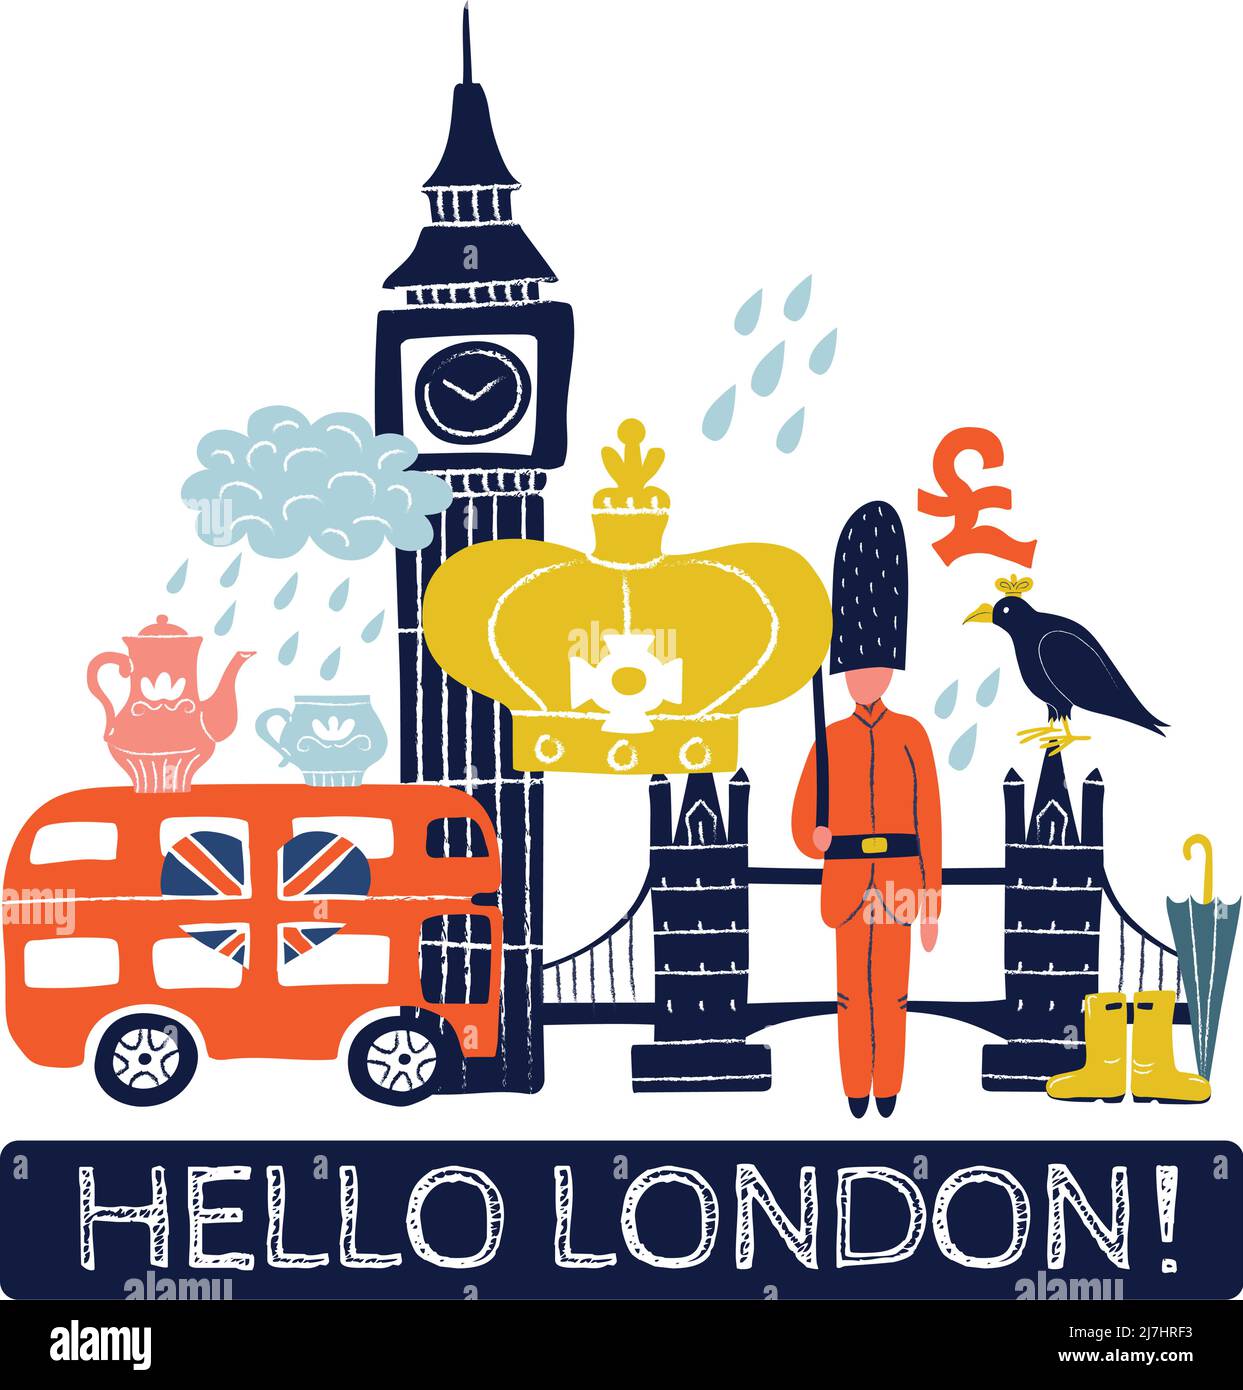 Tourist london Poster mit königlicher Krone, Pfund-Zeichen, Doppeldeckerbus, Tower Bridge, Big ben Vektor-Illustration Stock Vektor